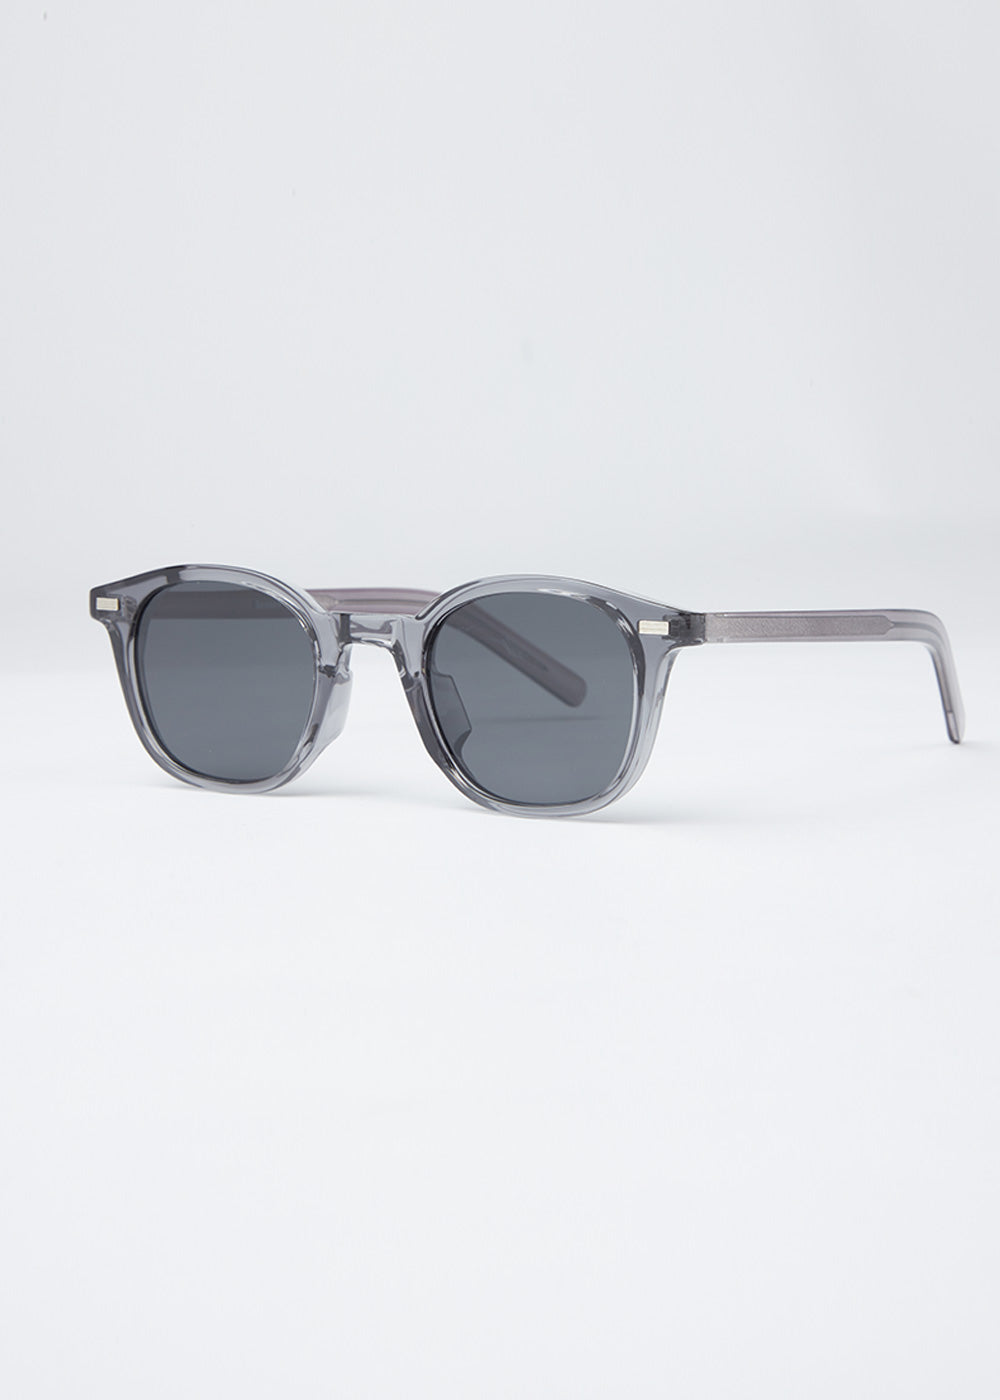 ClearMist Unisex Oval Sunglasses